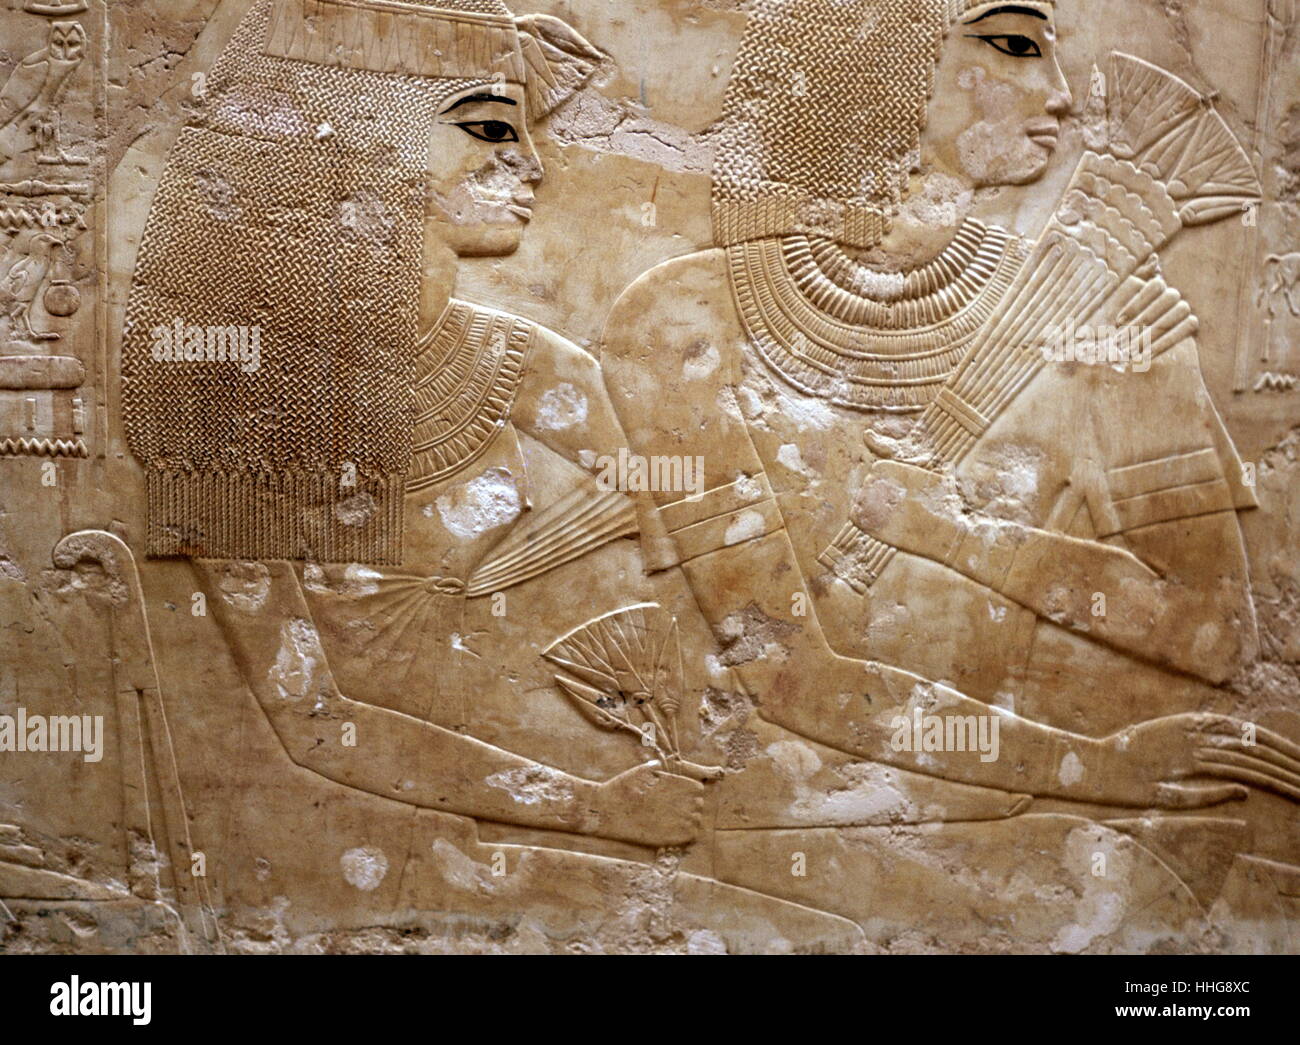 Rilievo raffigurante Ramose e sua moglie, dalla tomba di Ramose sulla riva occidentale di Luxor. Ramose fu governatore di Tebe e visir durante i regni di Amenofi III che governarono l'Egitto da 1391-1353 o 1388-1351 BC e Amenofi IV che ha cambiato il suo nome in Akhenaton e regnò da 1353-1336 o 1351- 1334 BC. Tebe è il nome i greci hanno dato a Waset, l'antica capitale dell'Egitto Foto Stock